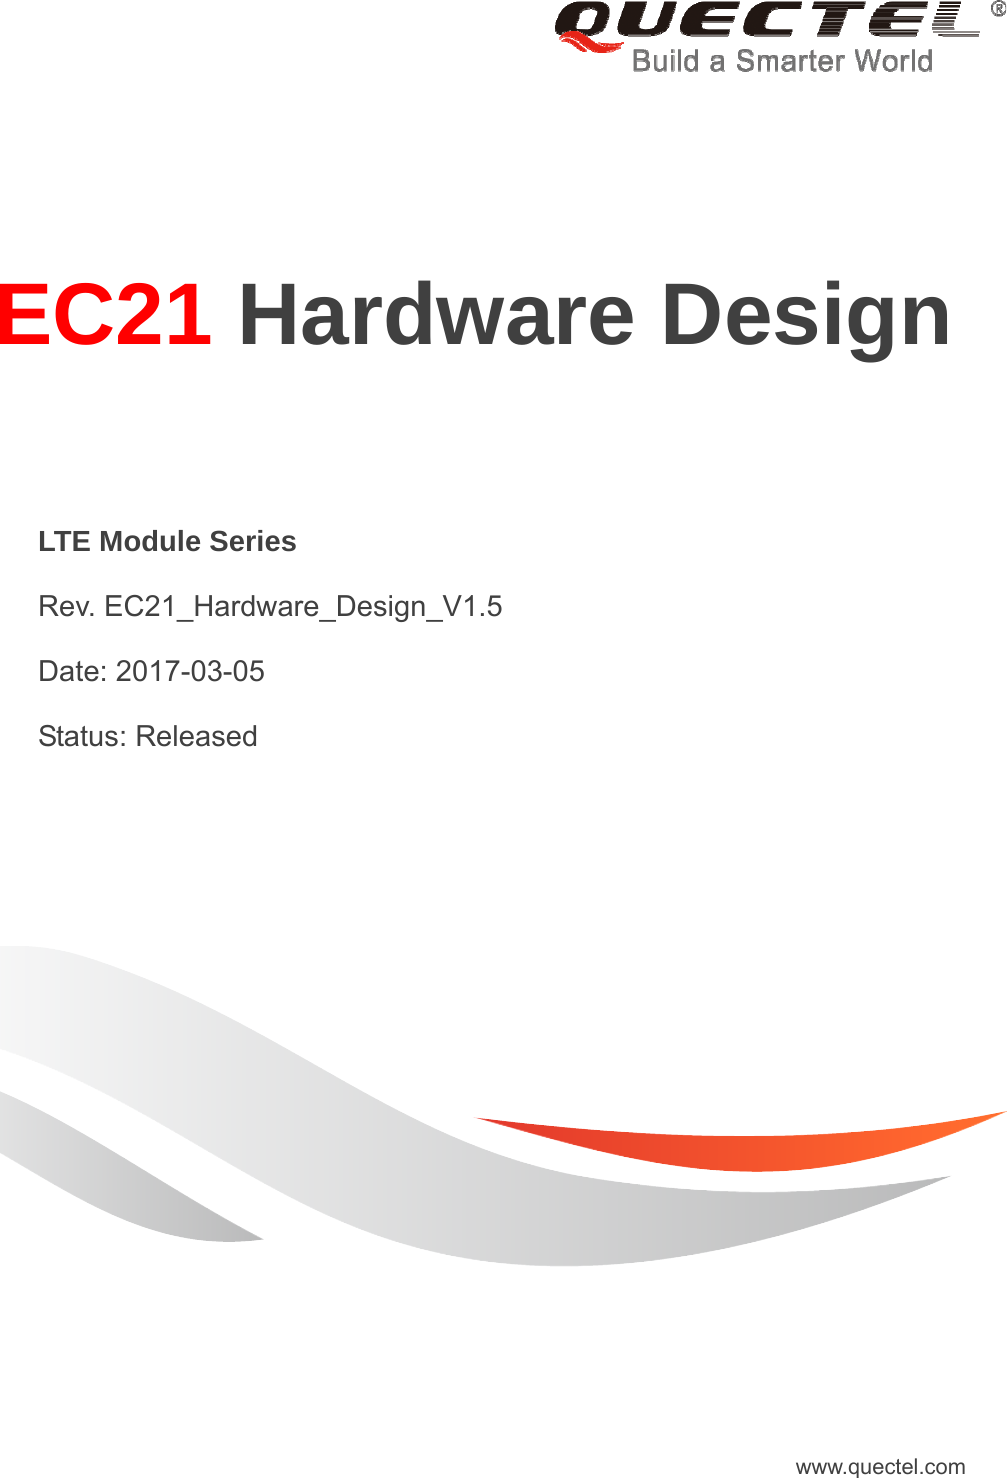     EC21 Hardware Design  LTE Module Series  Rev. EC21_Hardware_Design_V1.5  Date: 2017-03-05  Status: Released www.quectel.com